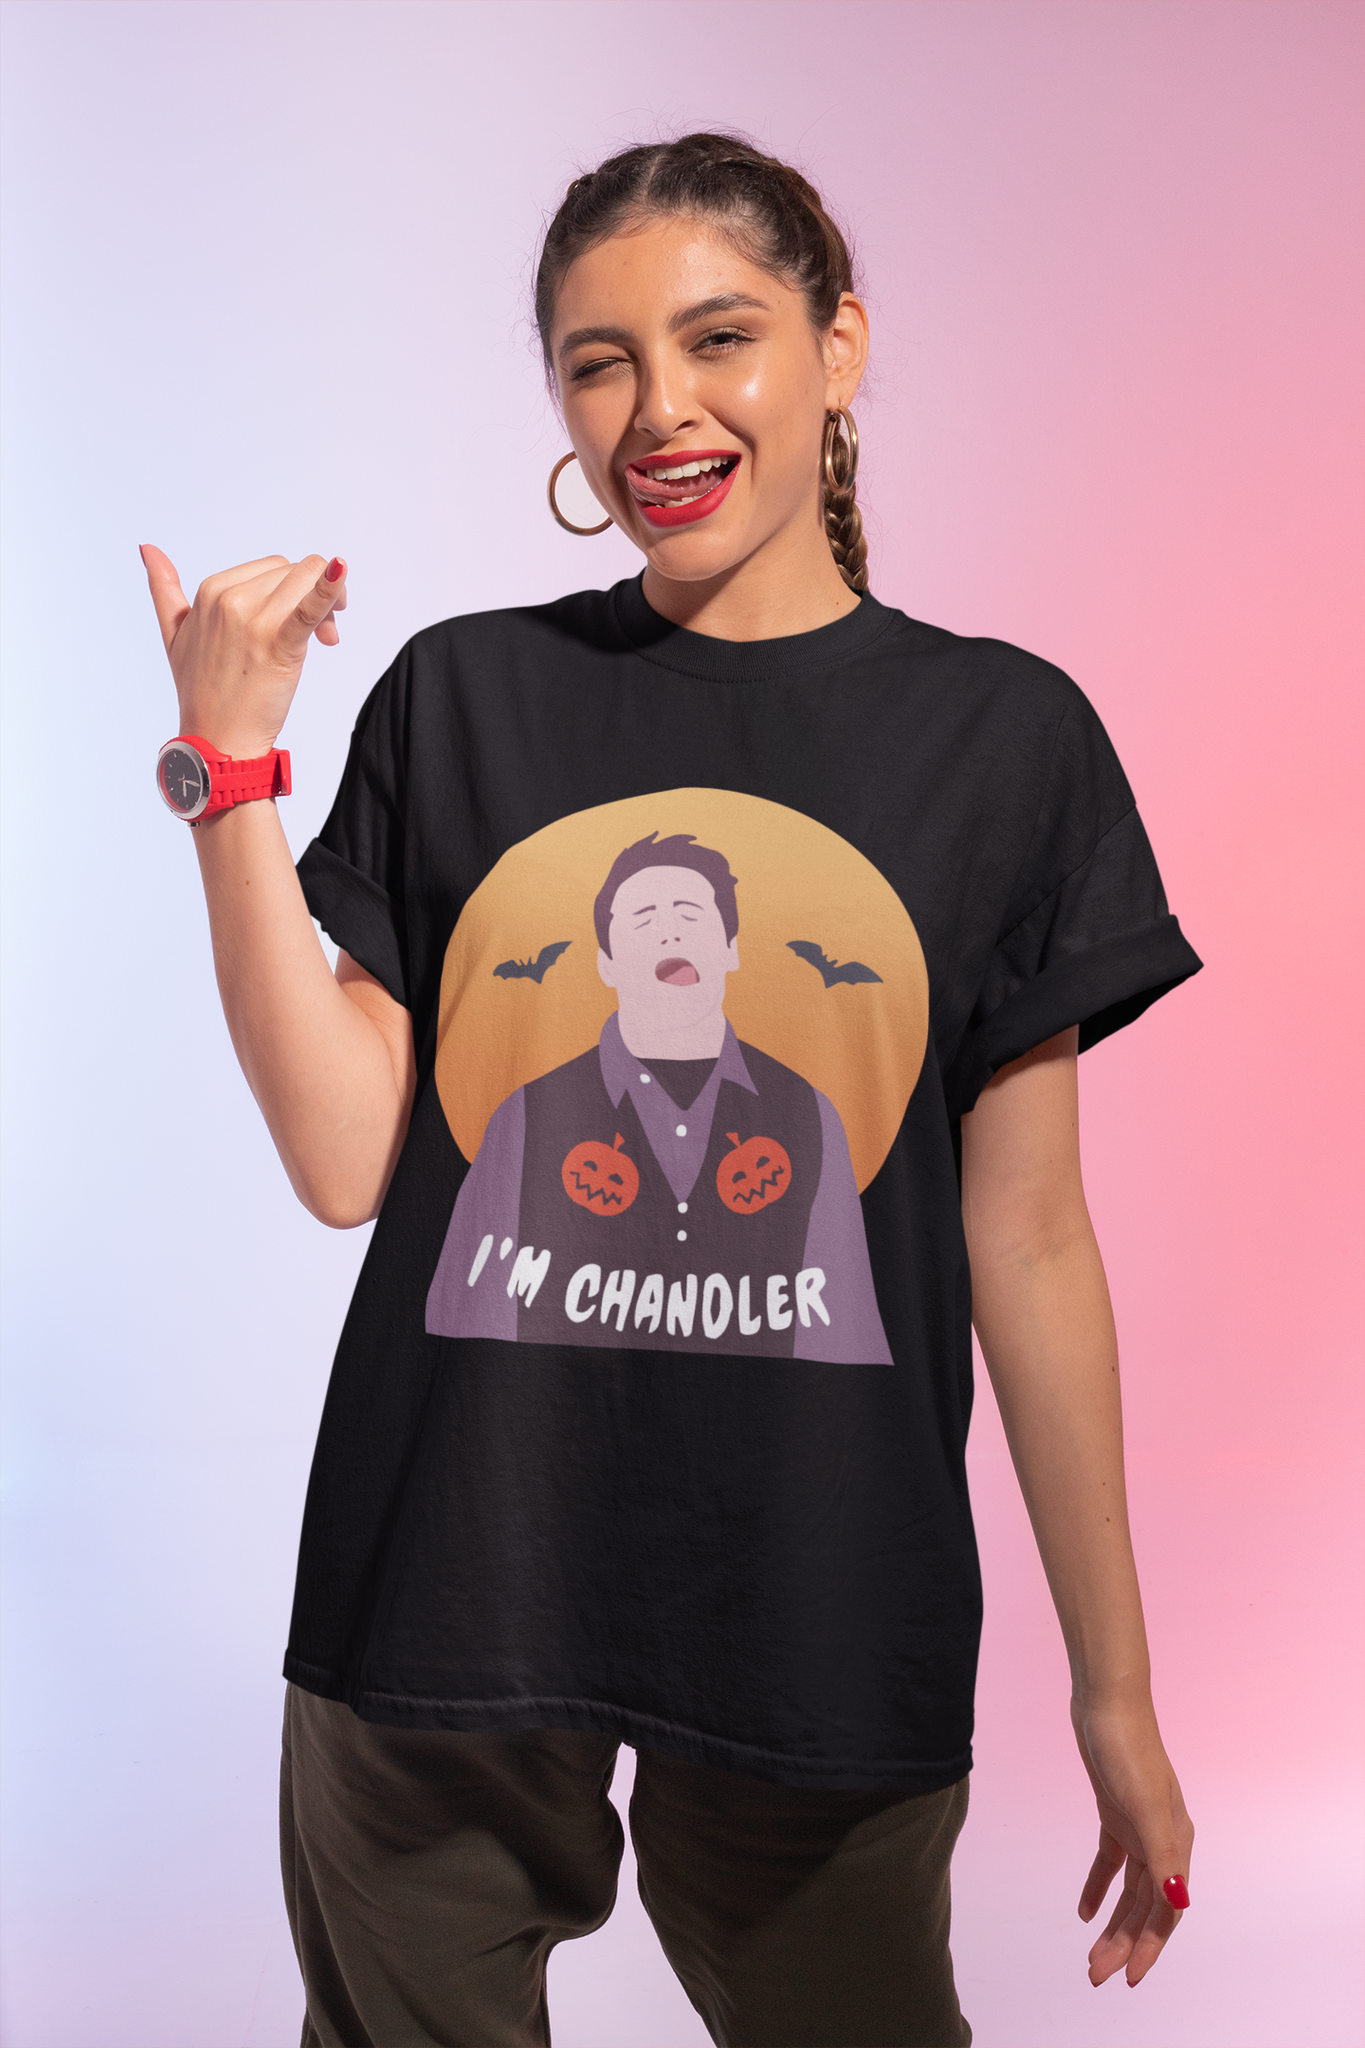 Friends TV Show T Shirt, Chandler T Shirt, Im Chandler Tshirt, Halloween Gifts